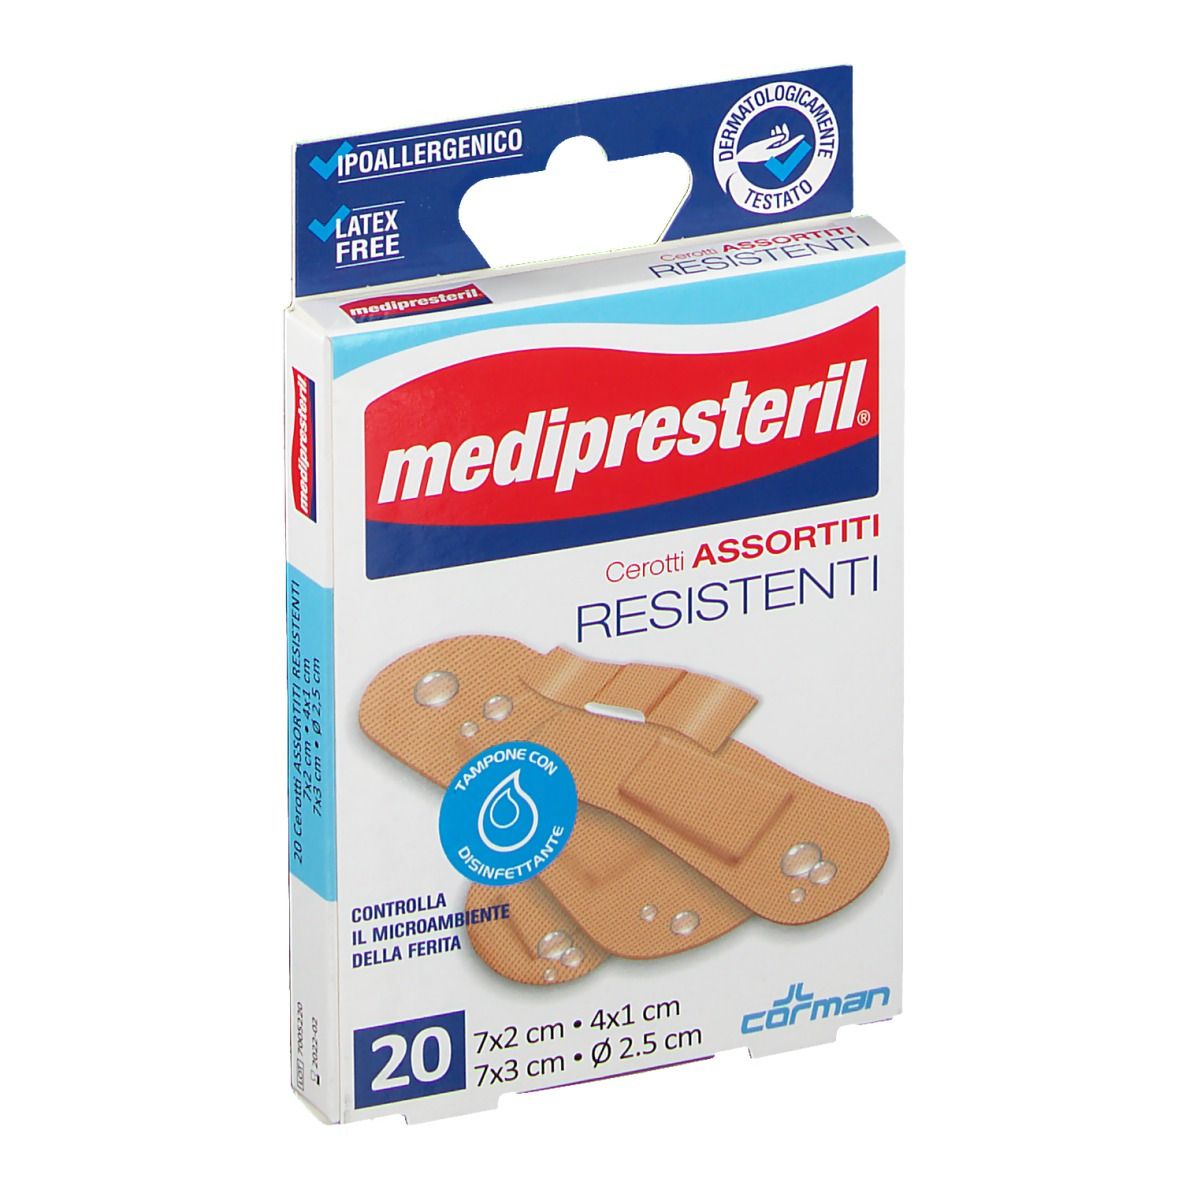 MediPresteril® Cerotti Assortiti Resistenti 4 Formati